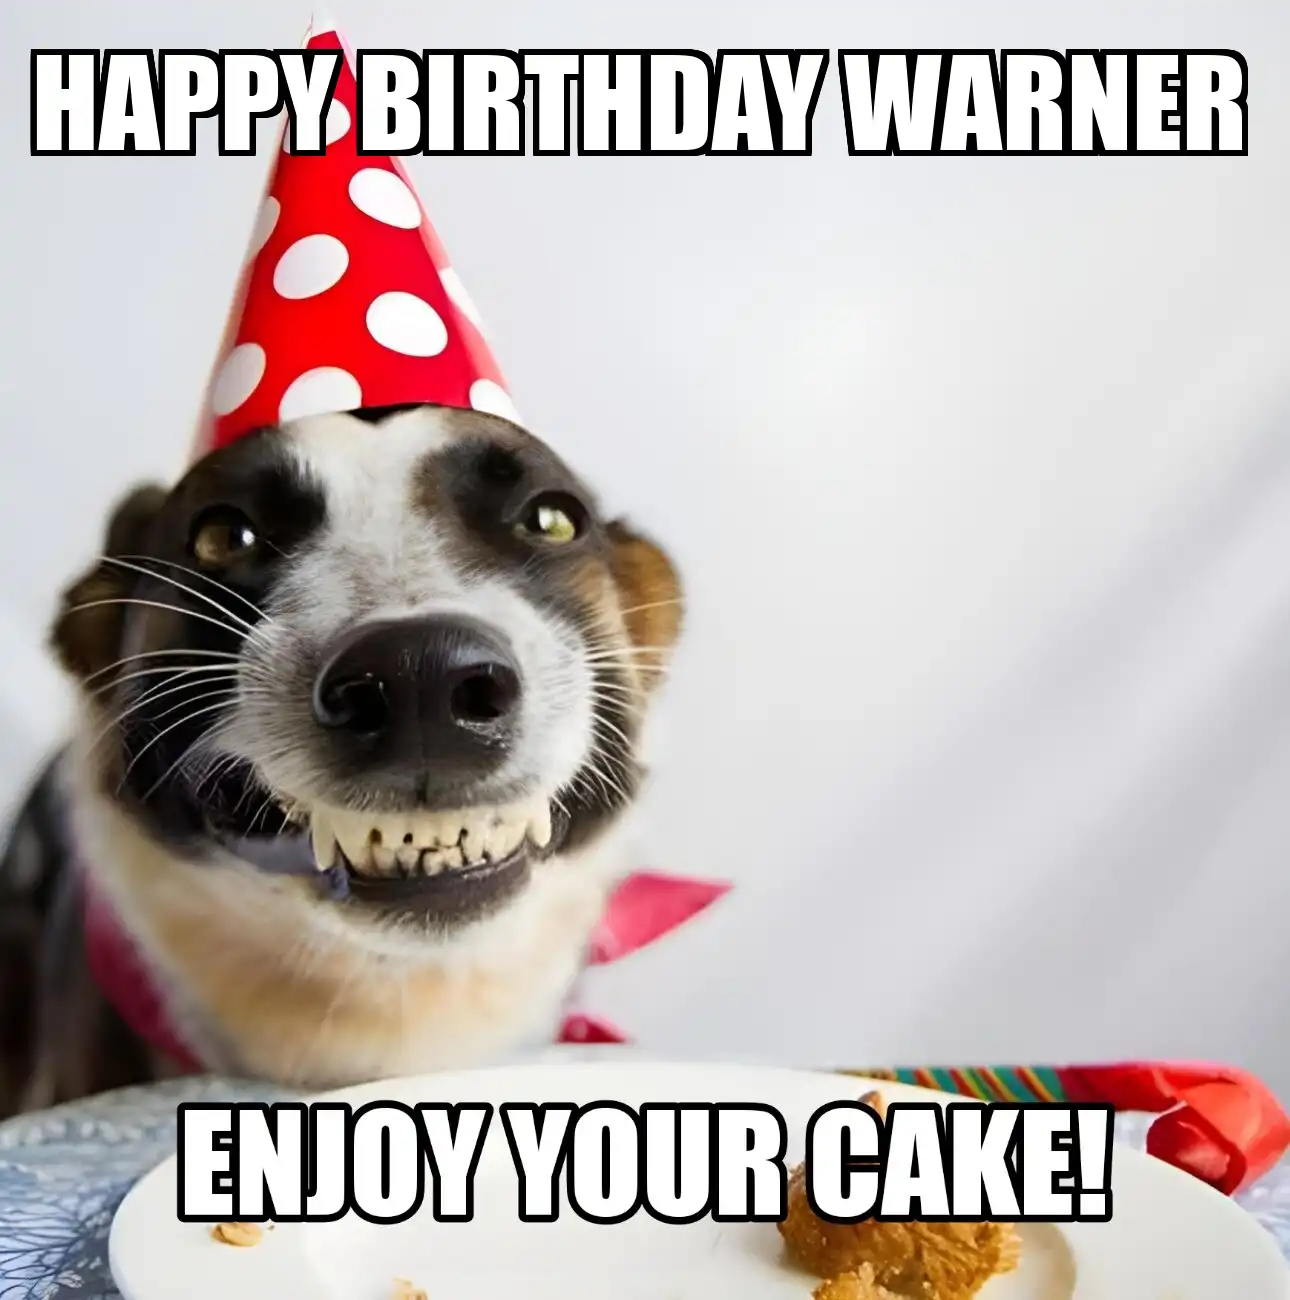 Happy Birthday Warner Enjoy Your Cake Dog Meme